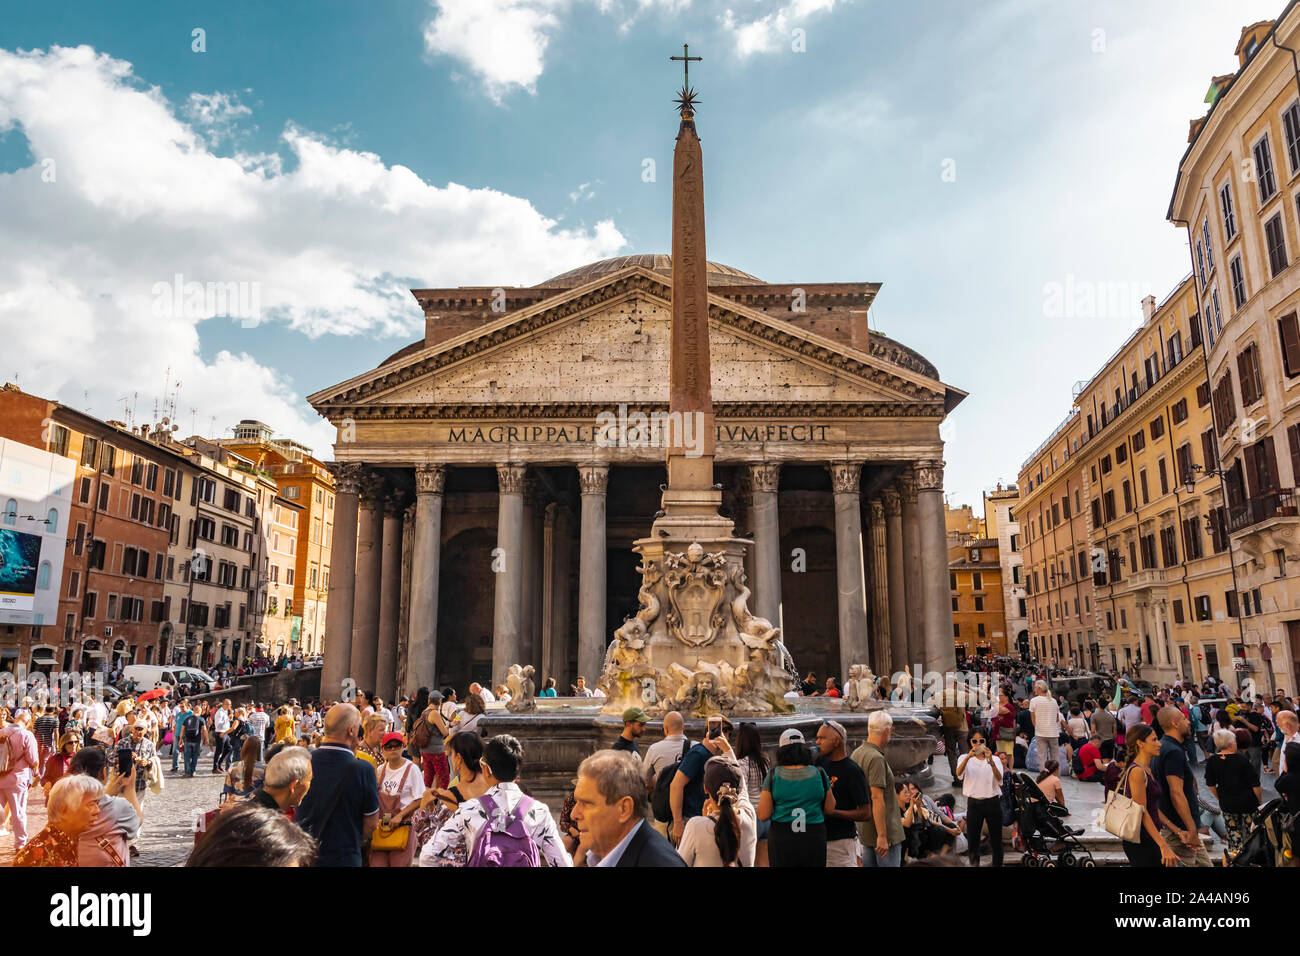 Rome, Italie - le 6 octobre 2019 : foule de gens sur la place du monument du Panthéon monument avec des colonnes et une fontaine dans la ville. Banque D'Images